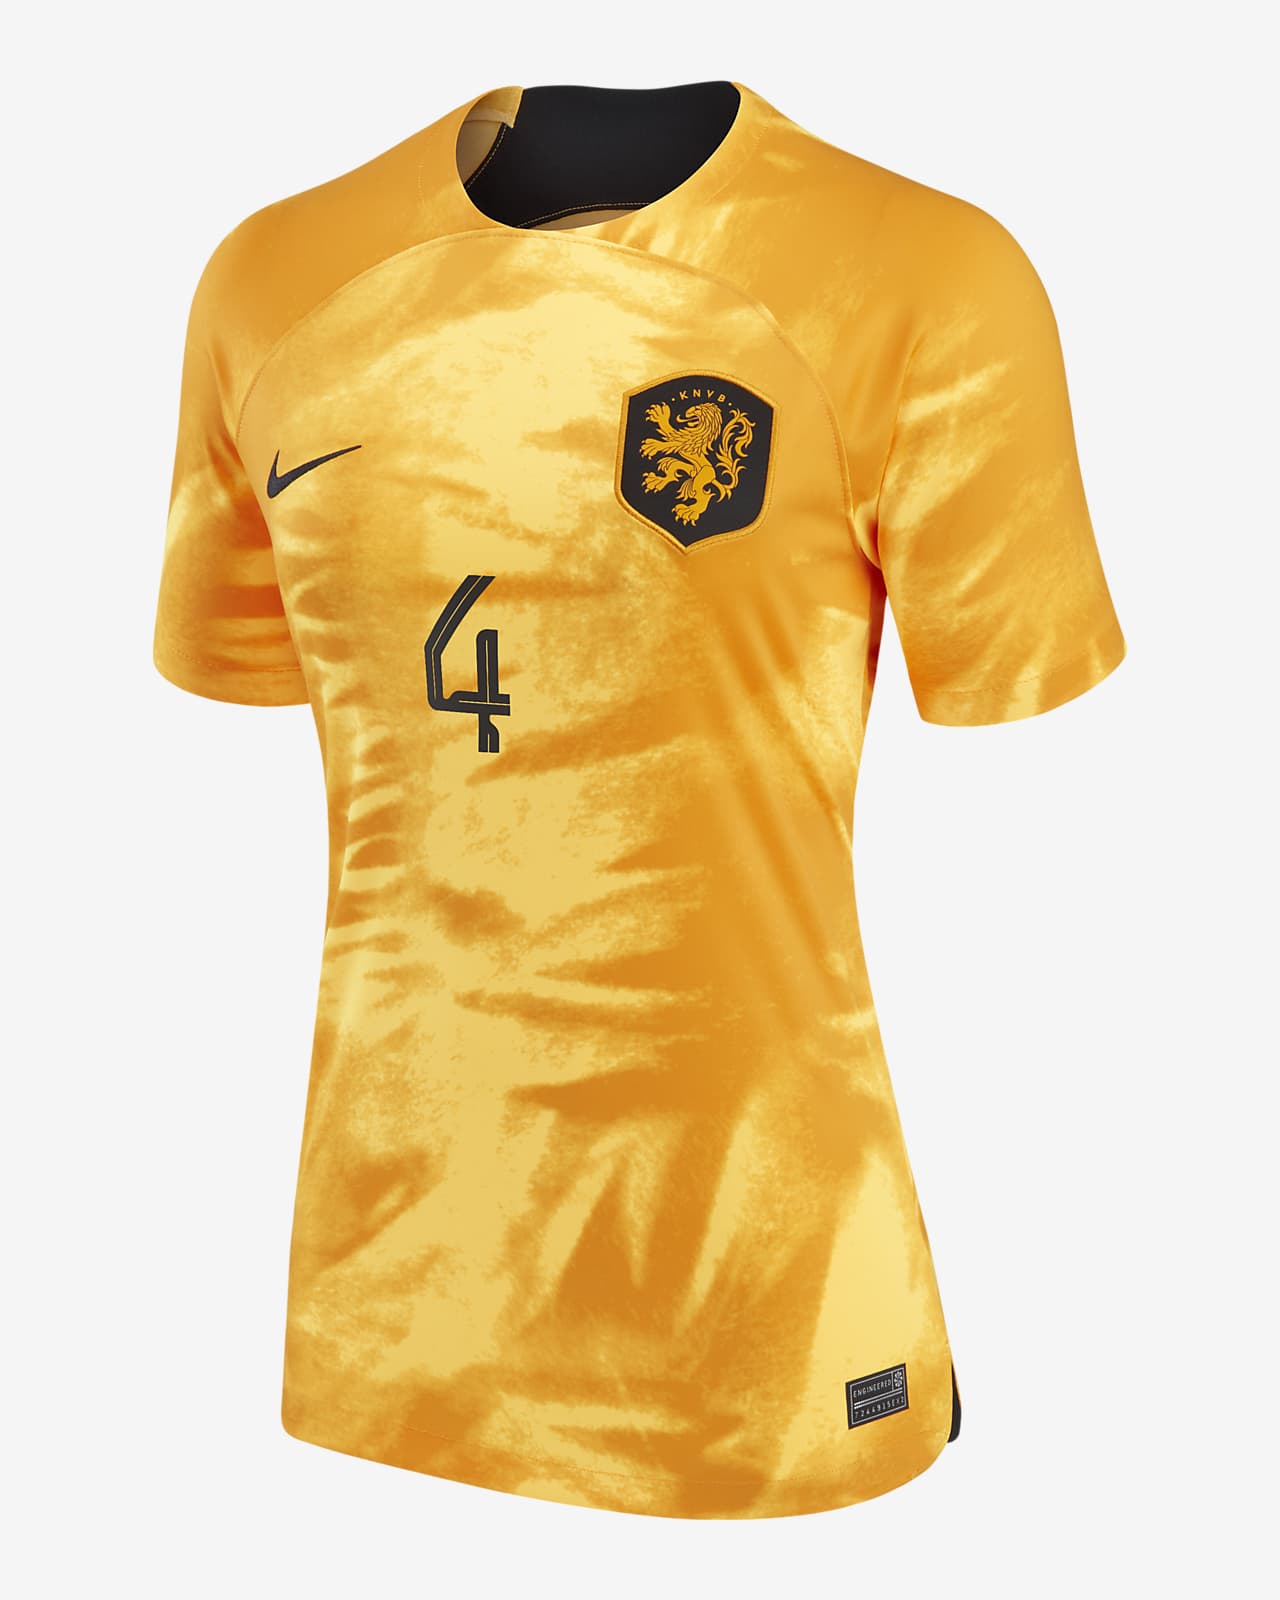 Official Netherlands Football Jersey & Gear